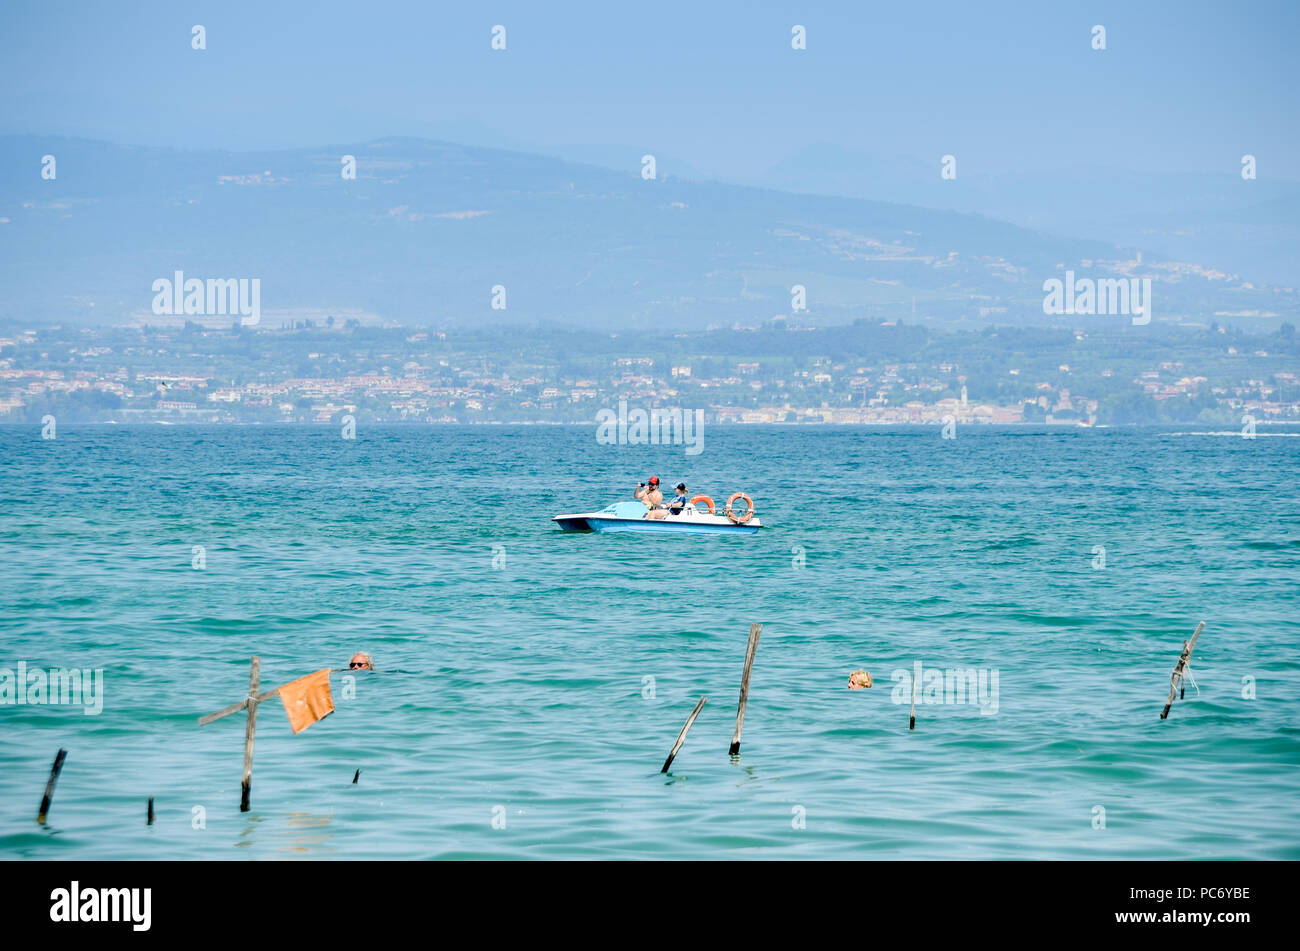 La spiaggia pubblica al lago di Garda su un bel giorno di estate Foto Stock